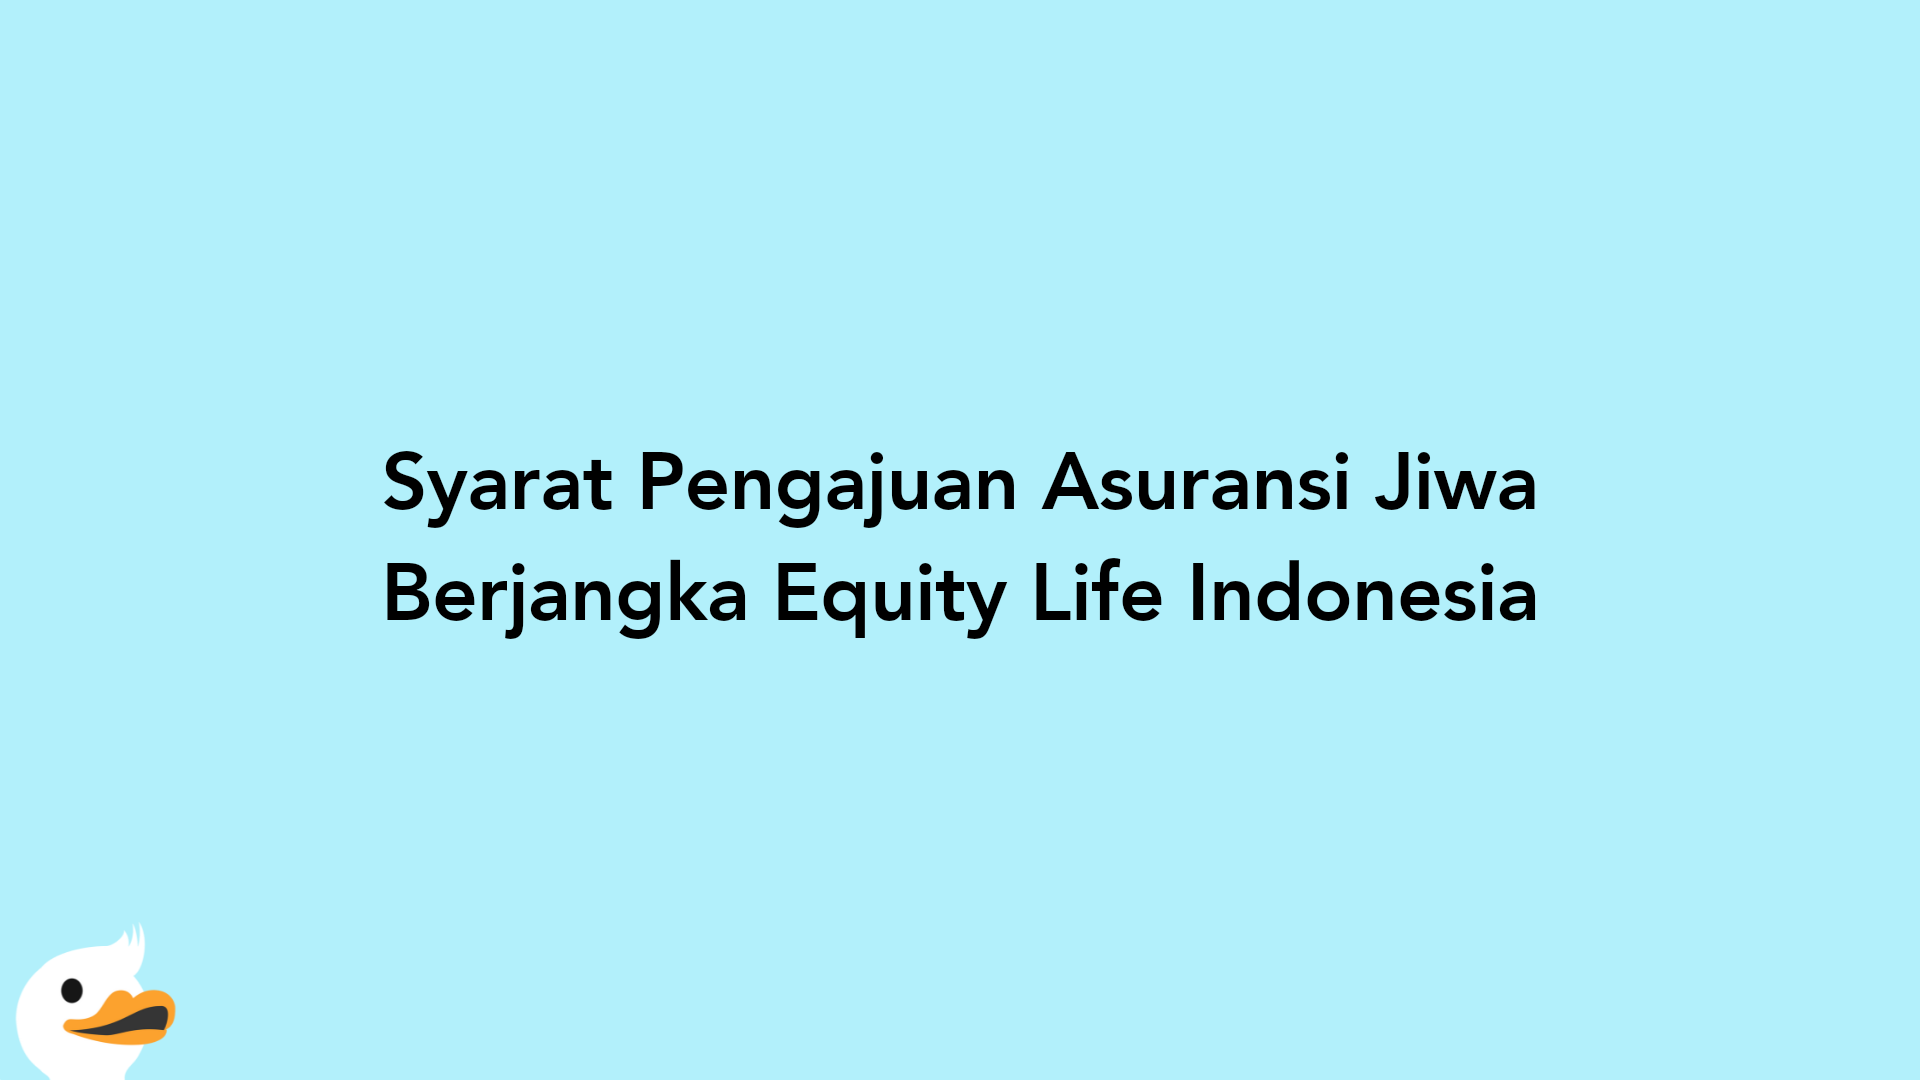 Syarat Pengajuan Asuransi Jiwa Berjangka Equity Life Indonesia